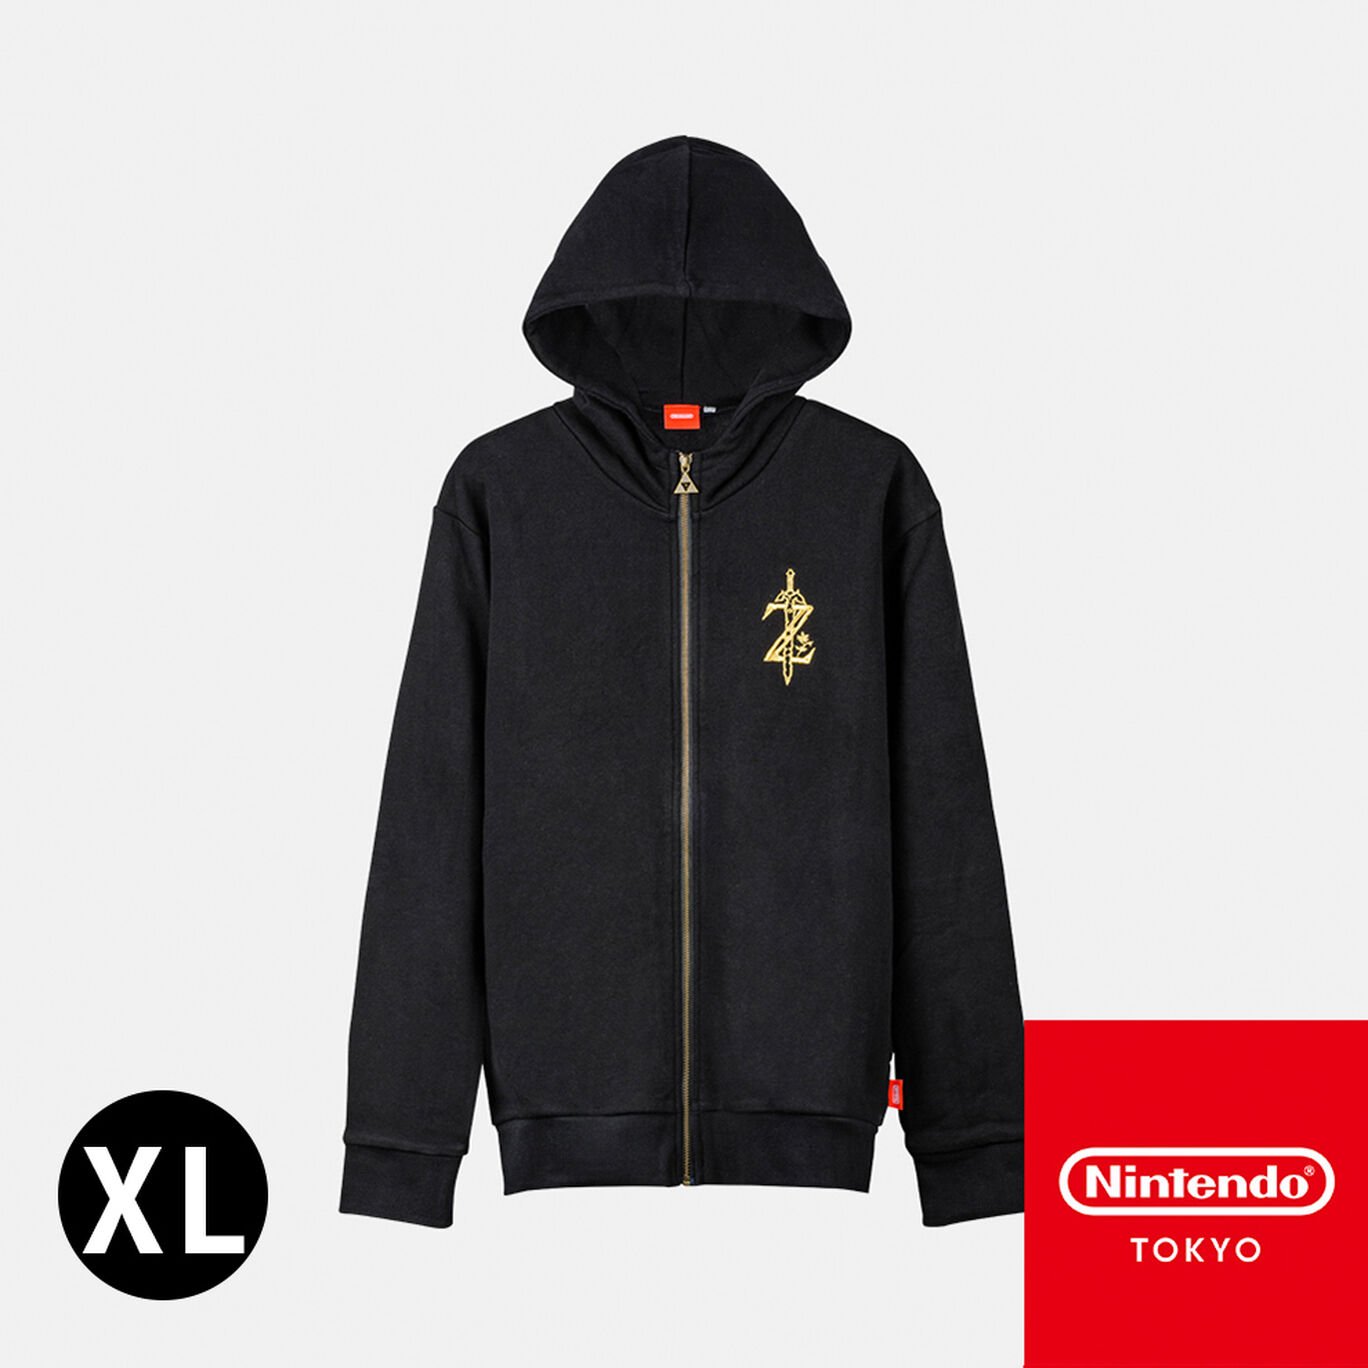 パーカー ゼルダの伝説 XL【Nintendo TOKYO取り扱い商品】